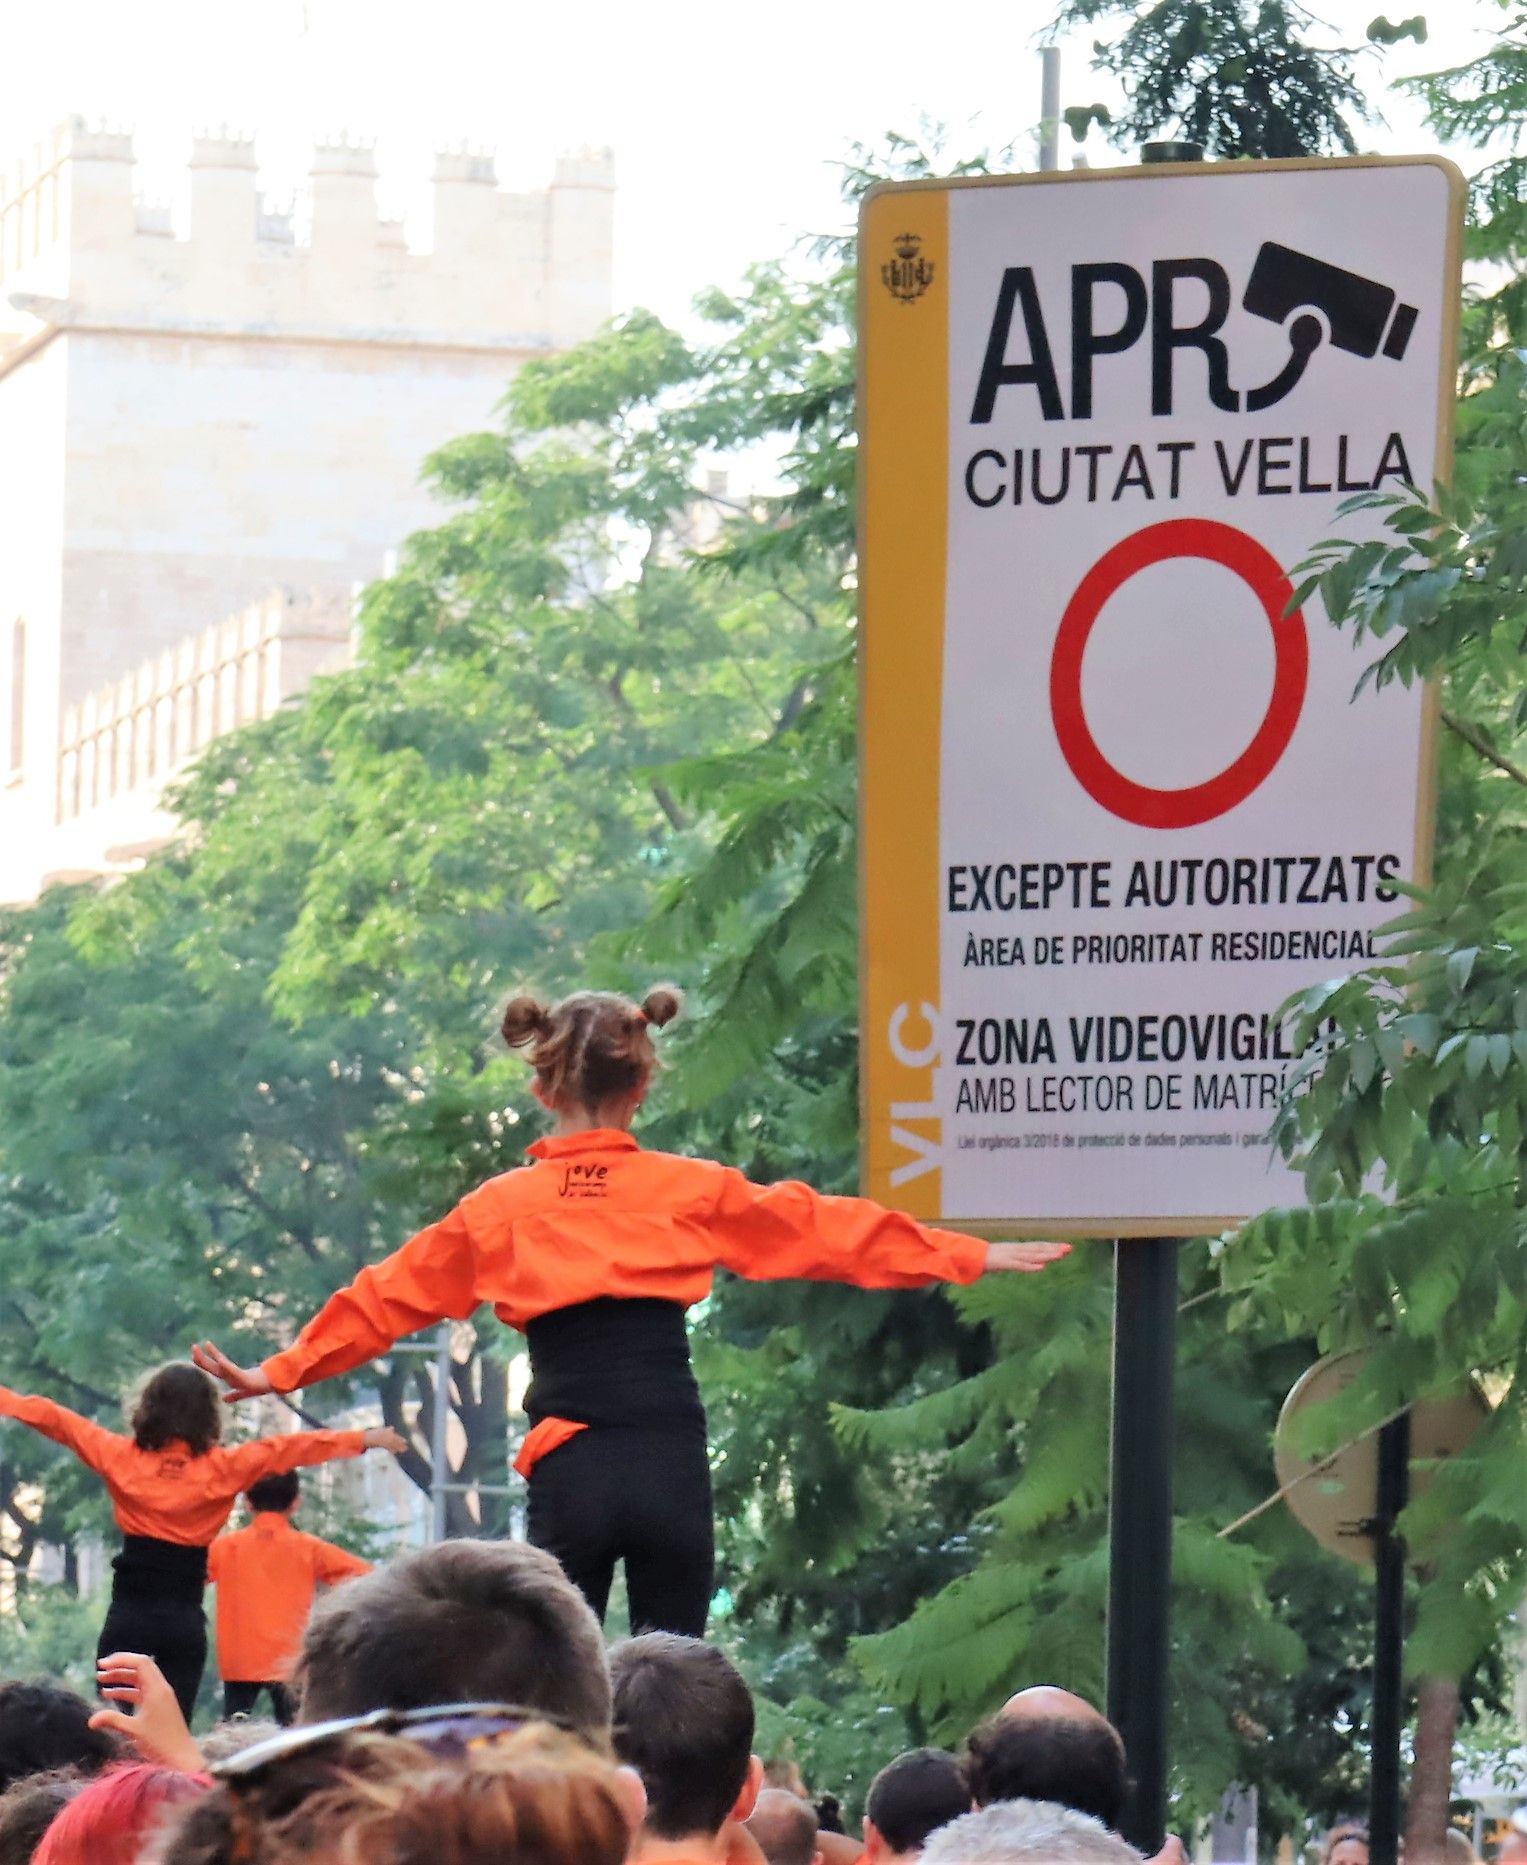 Espectacular exhibición de "Muixeranga" en las calles de València